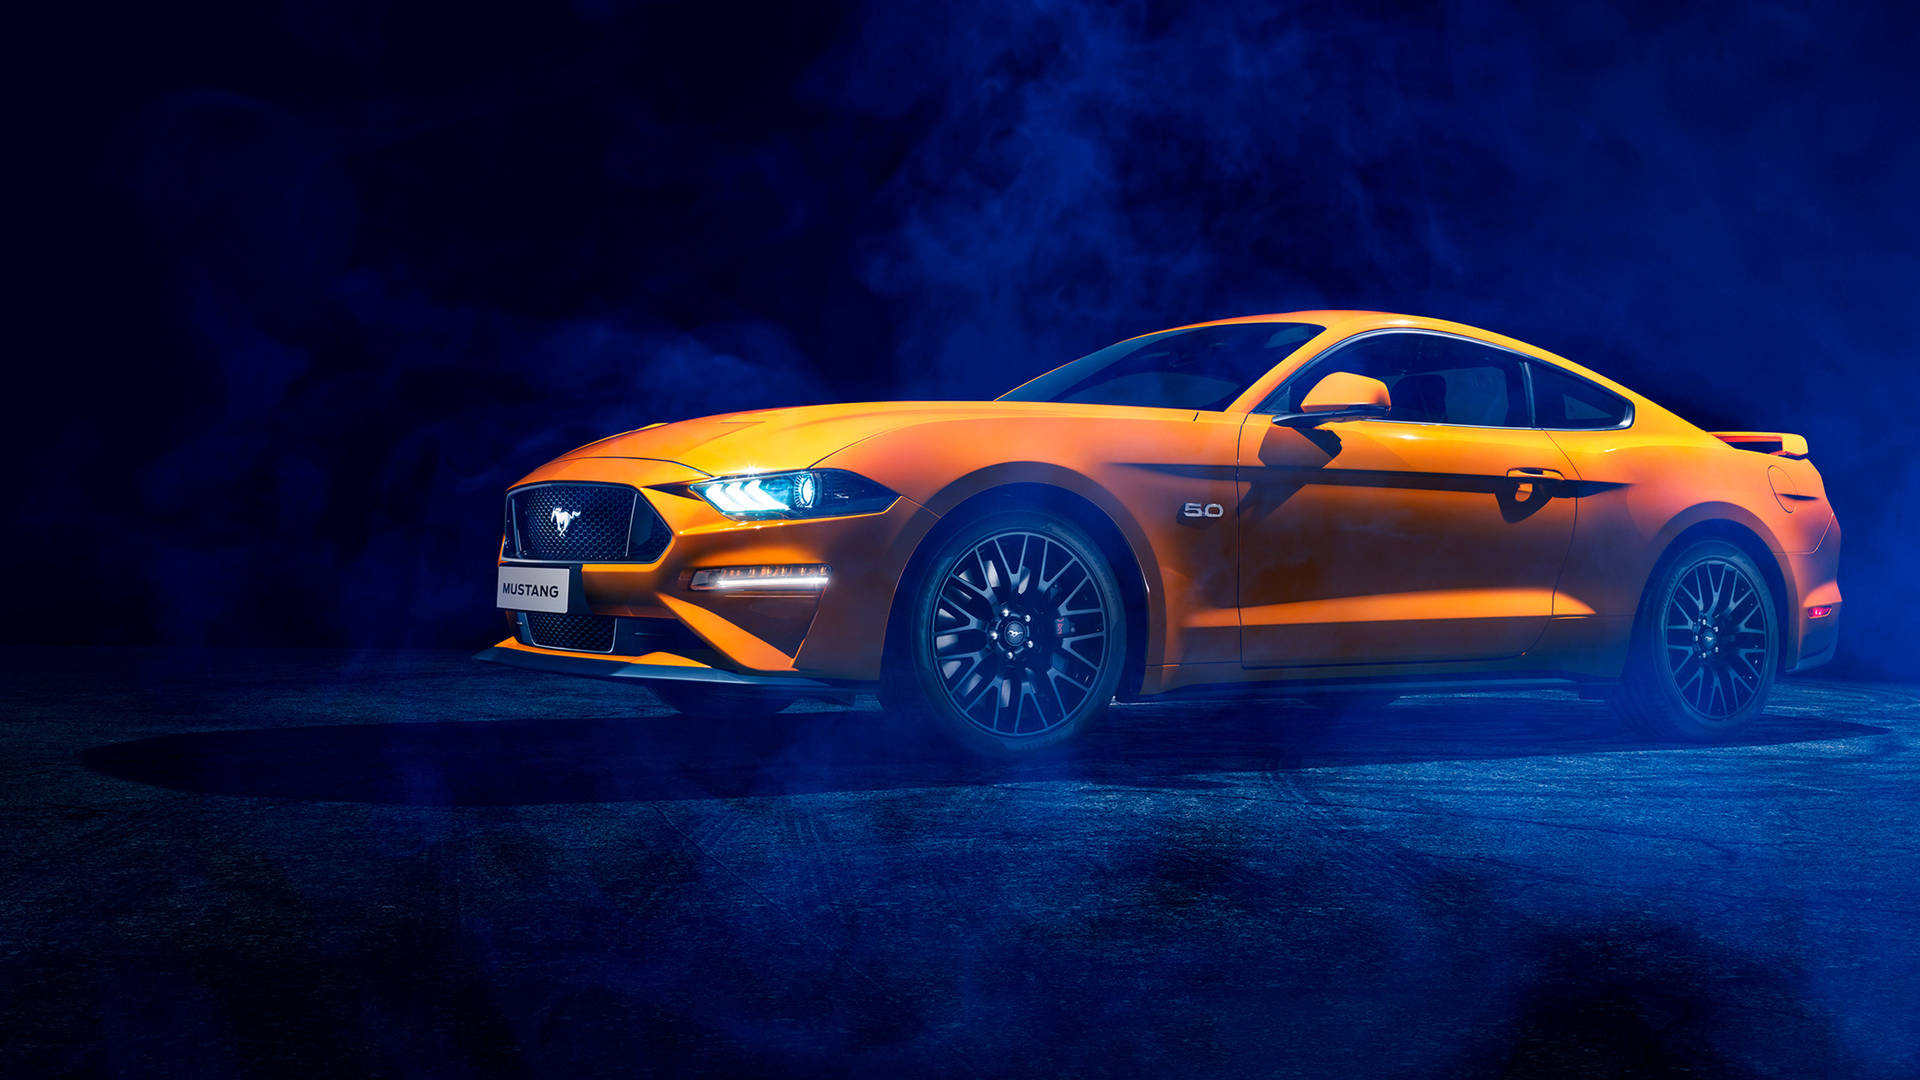 Vis off din tur med en klassisk cool Mustang bil tapet. Wallpaper